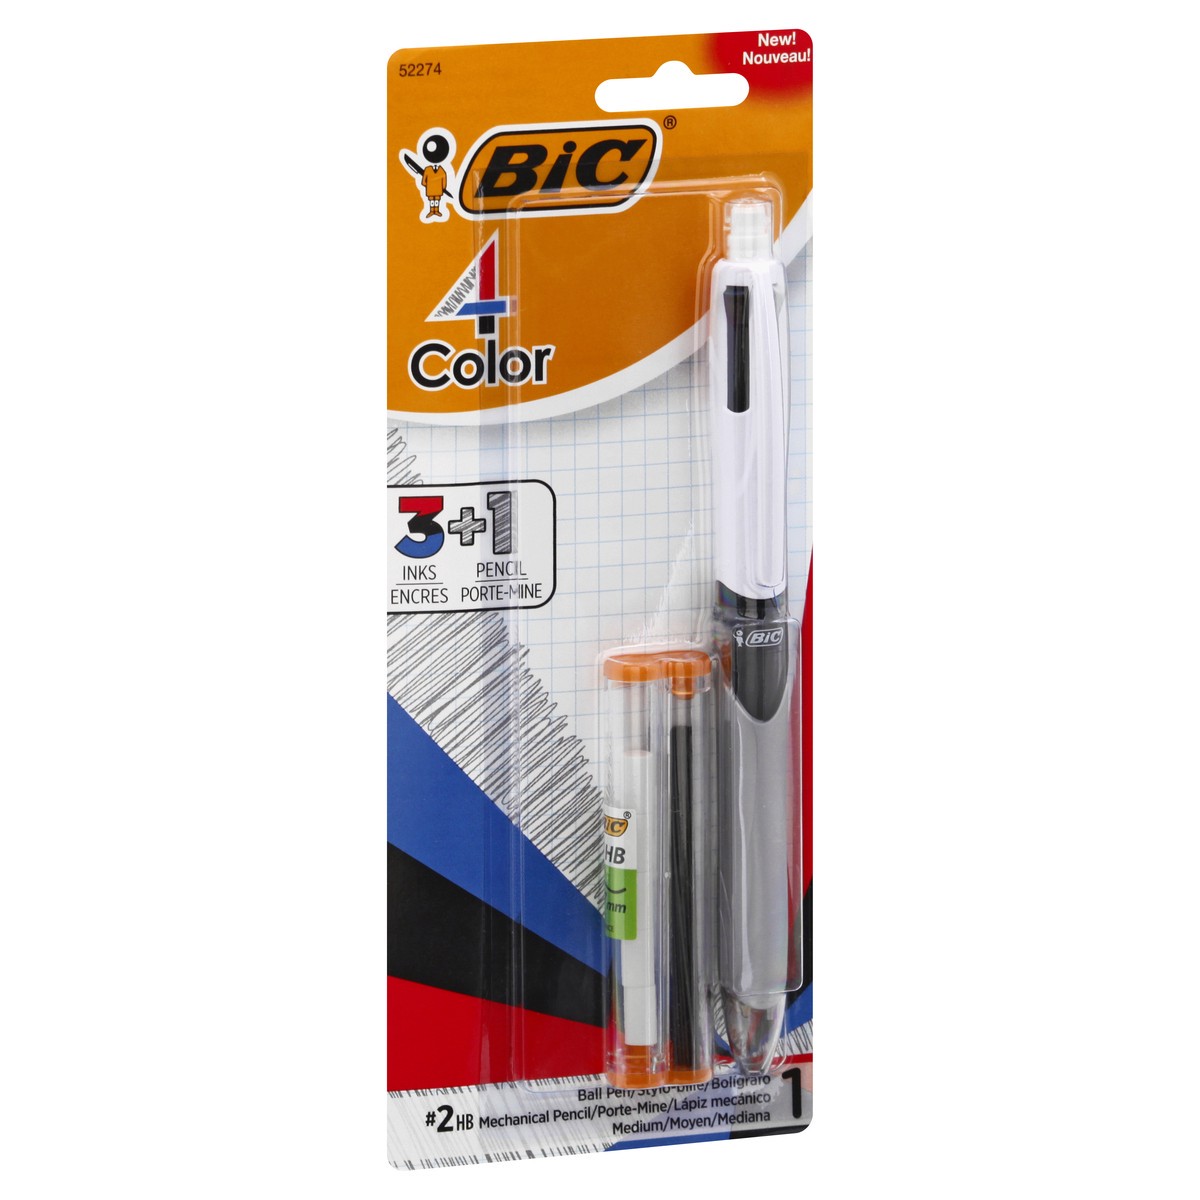 slide 6 of 11, BIC 4 Color Mechanical Pencil Medium No. 2 Ball Pen 1 ea, 1 ct